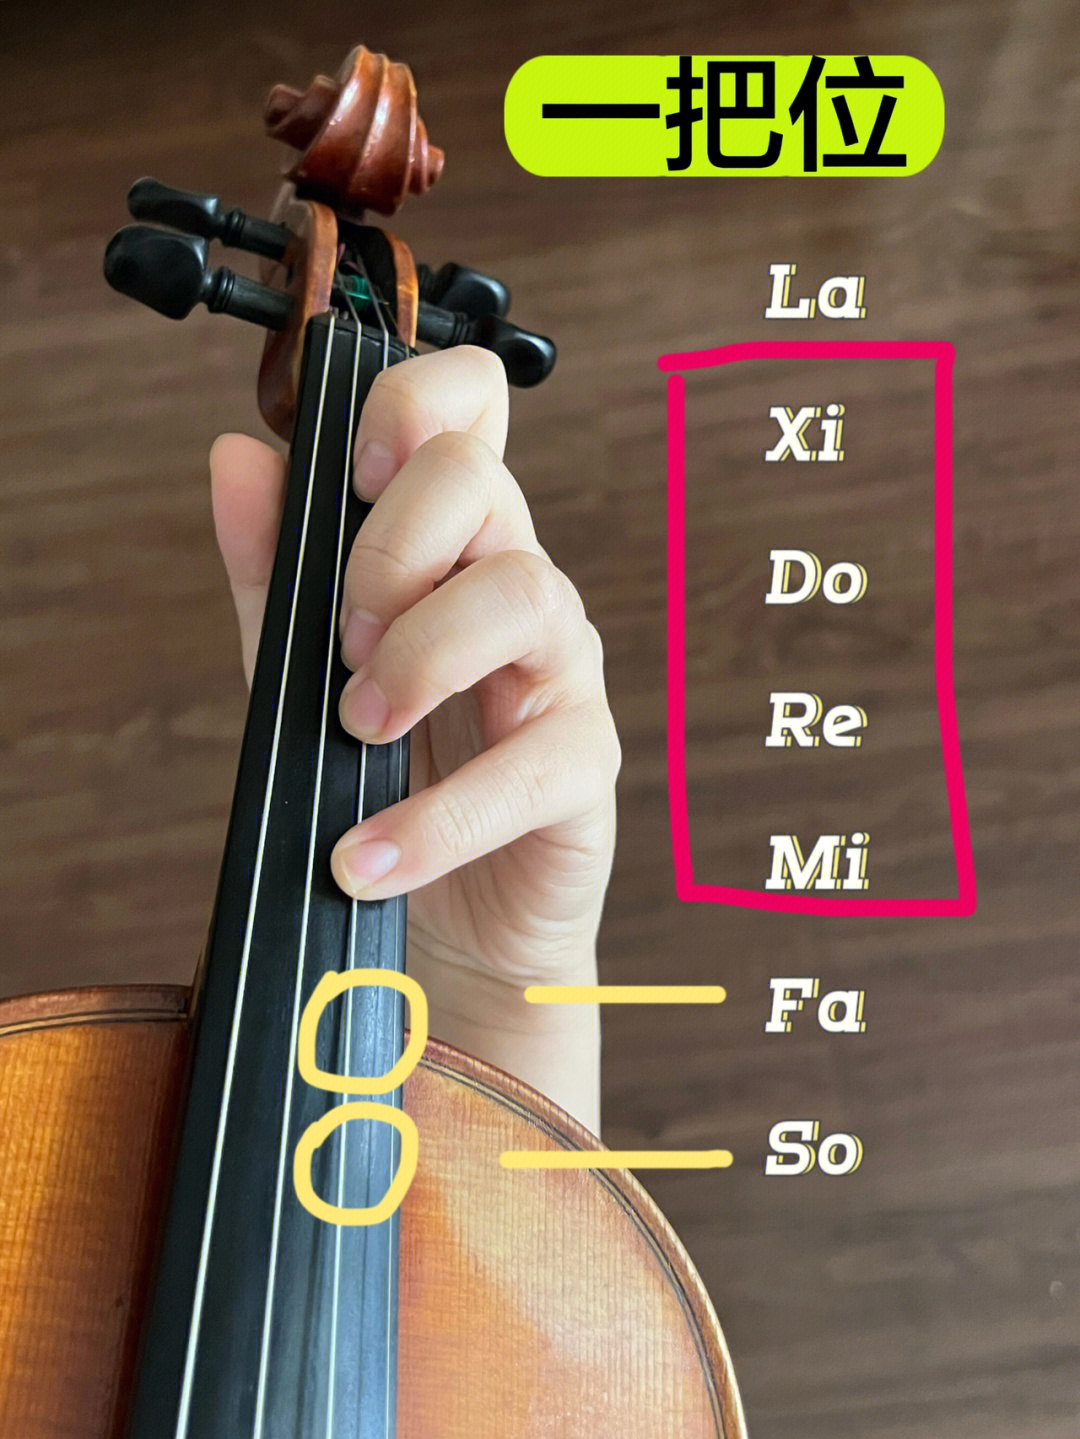 小提琴把位是什么你能一眼看出图4的把位吗